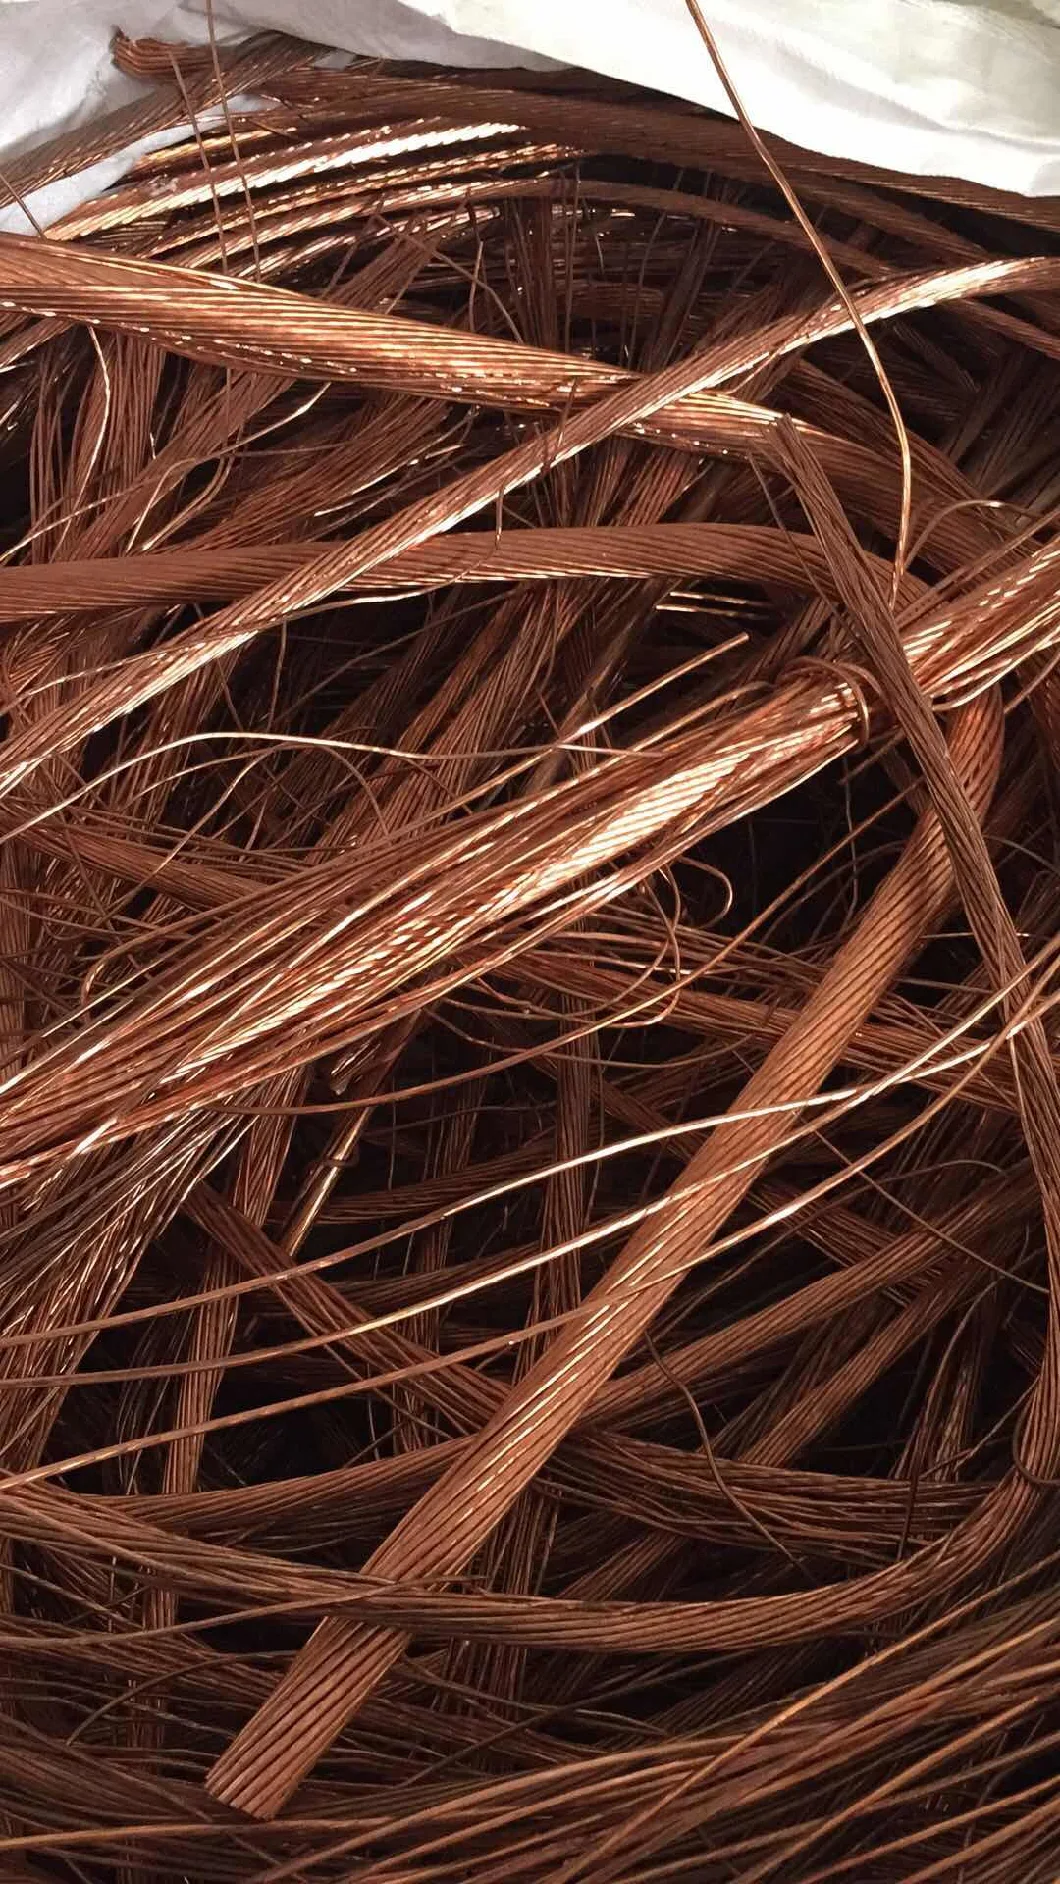 High Purity Copper Wire Scrap Millberry Copper Wire Scrap